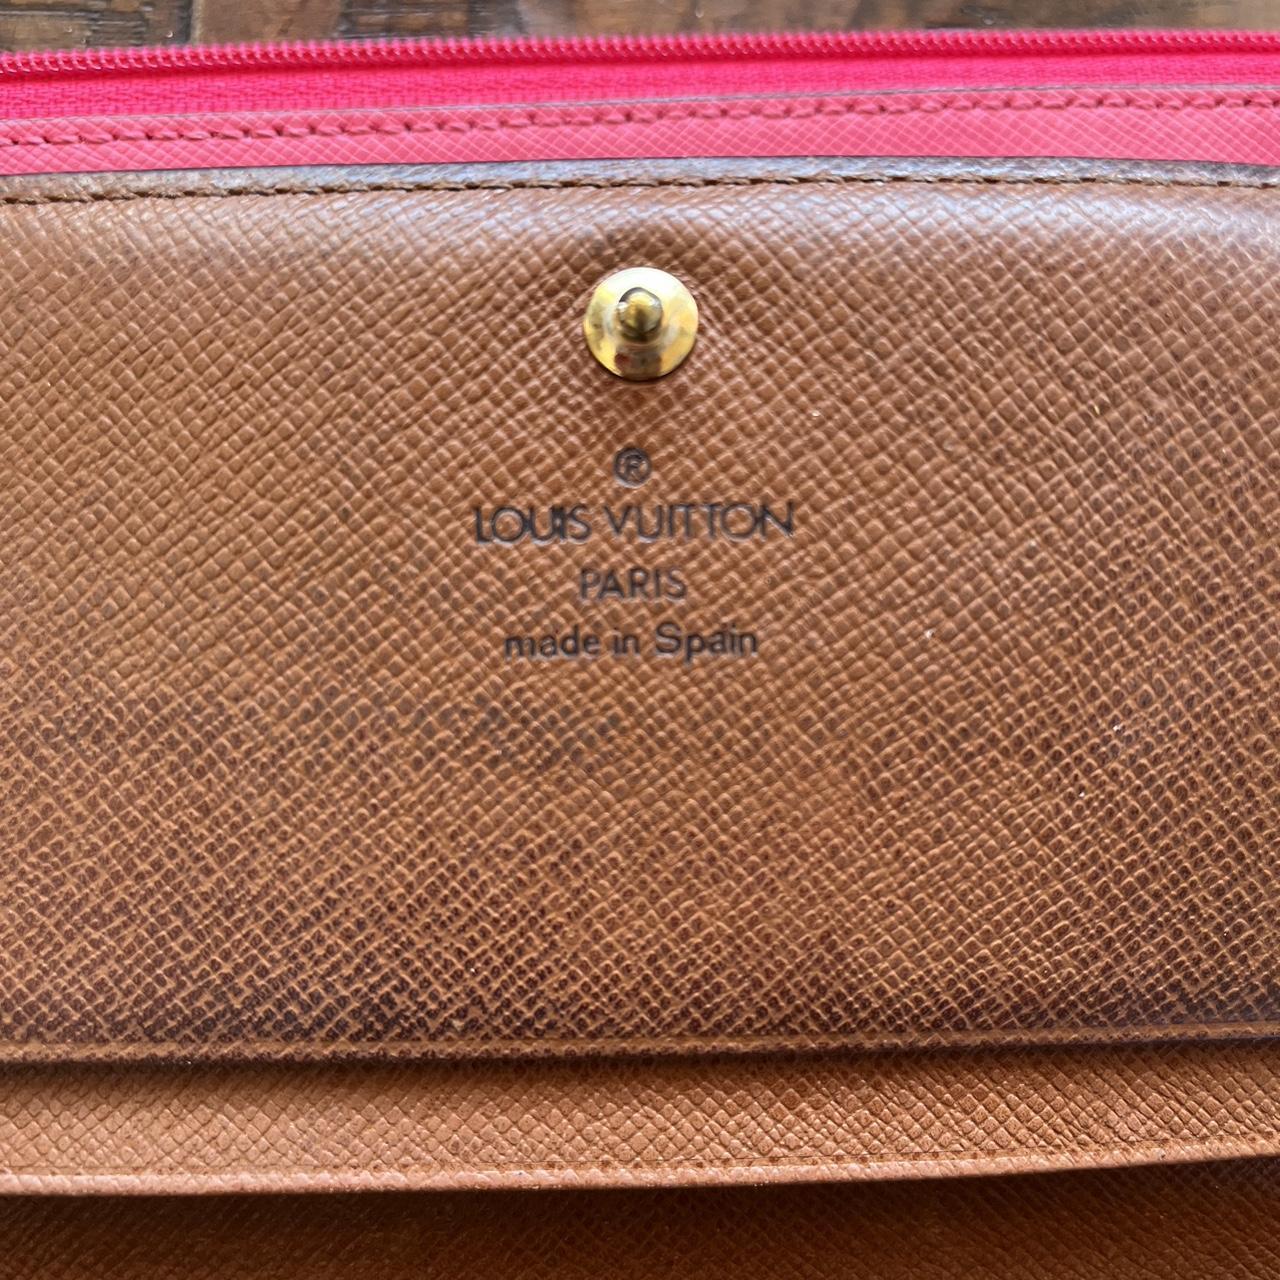 Authentic Louis Vuitton Wilshire antique purse - Depop